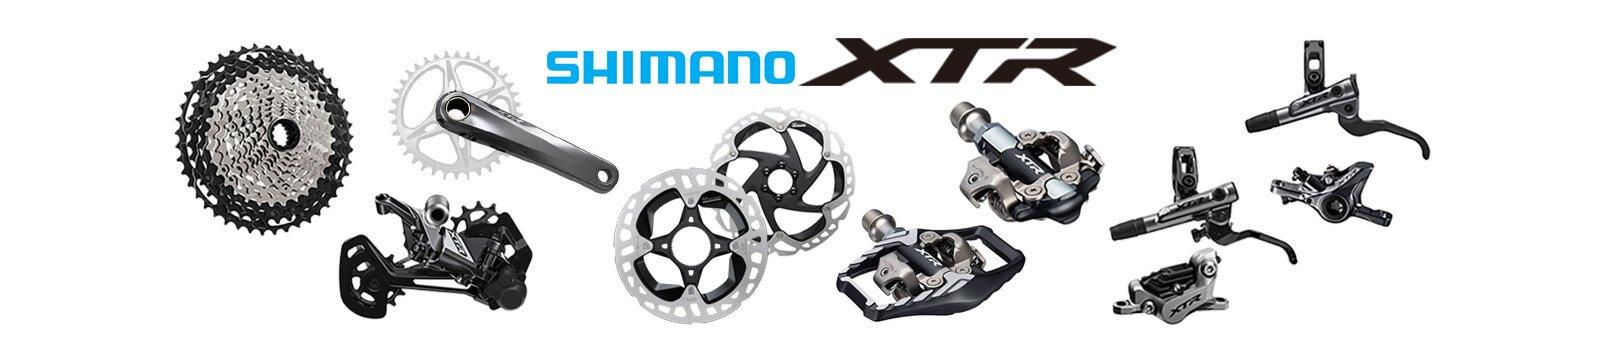 Shimano XTR M9100 12V 126 Eslabones - Marcovecchio Bikes